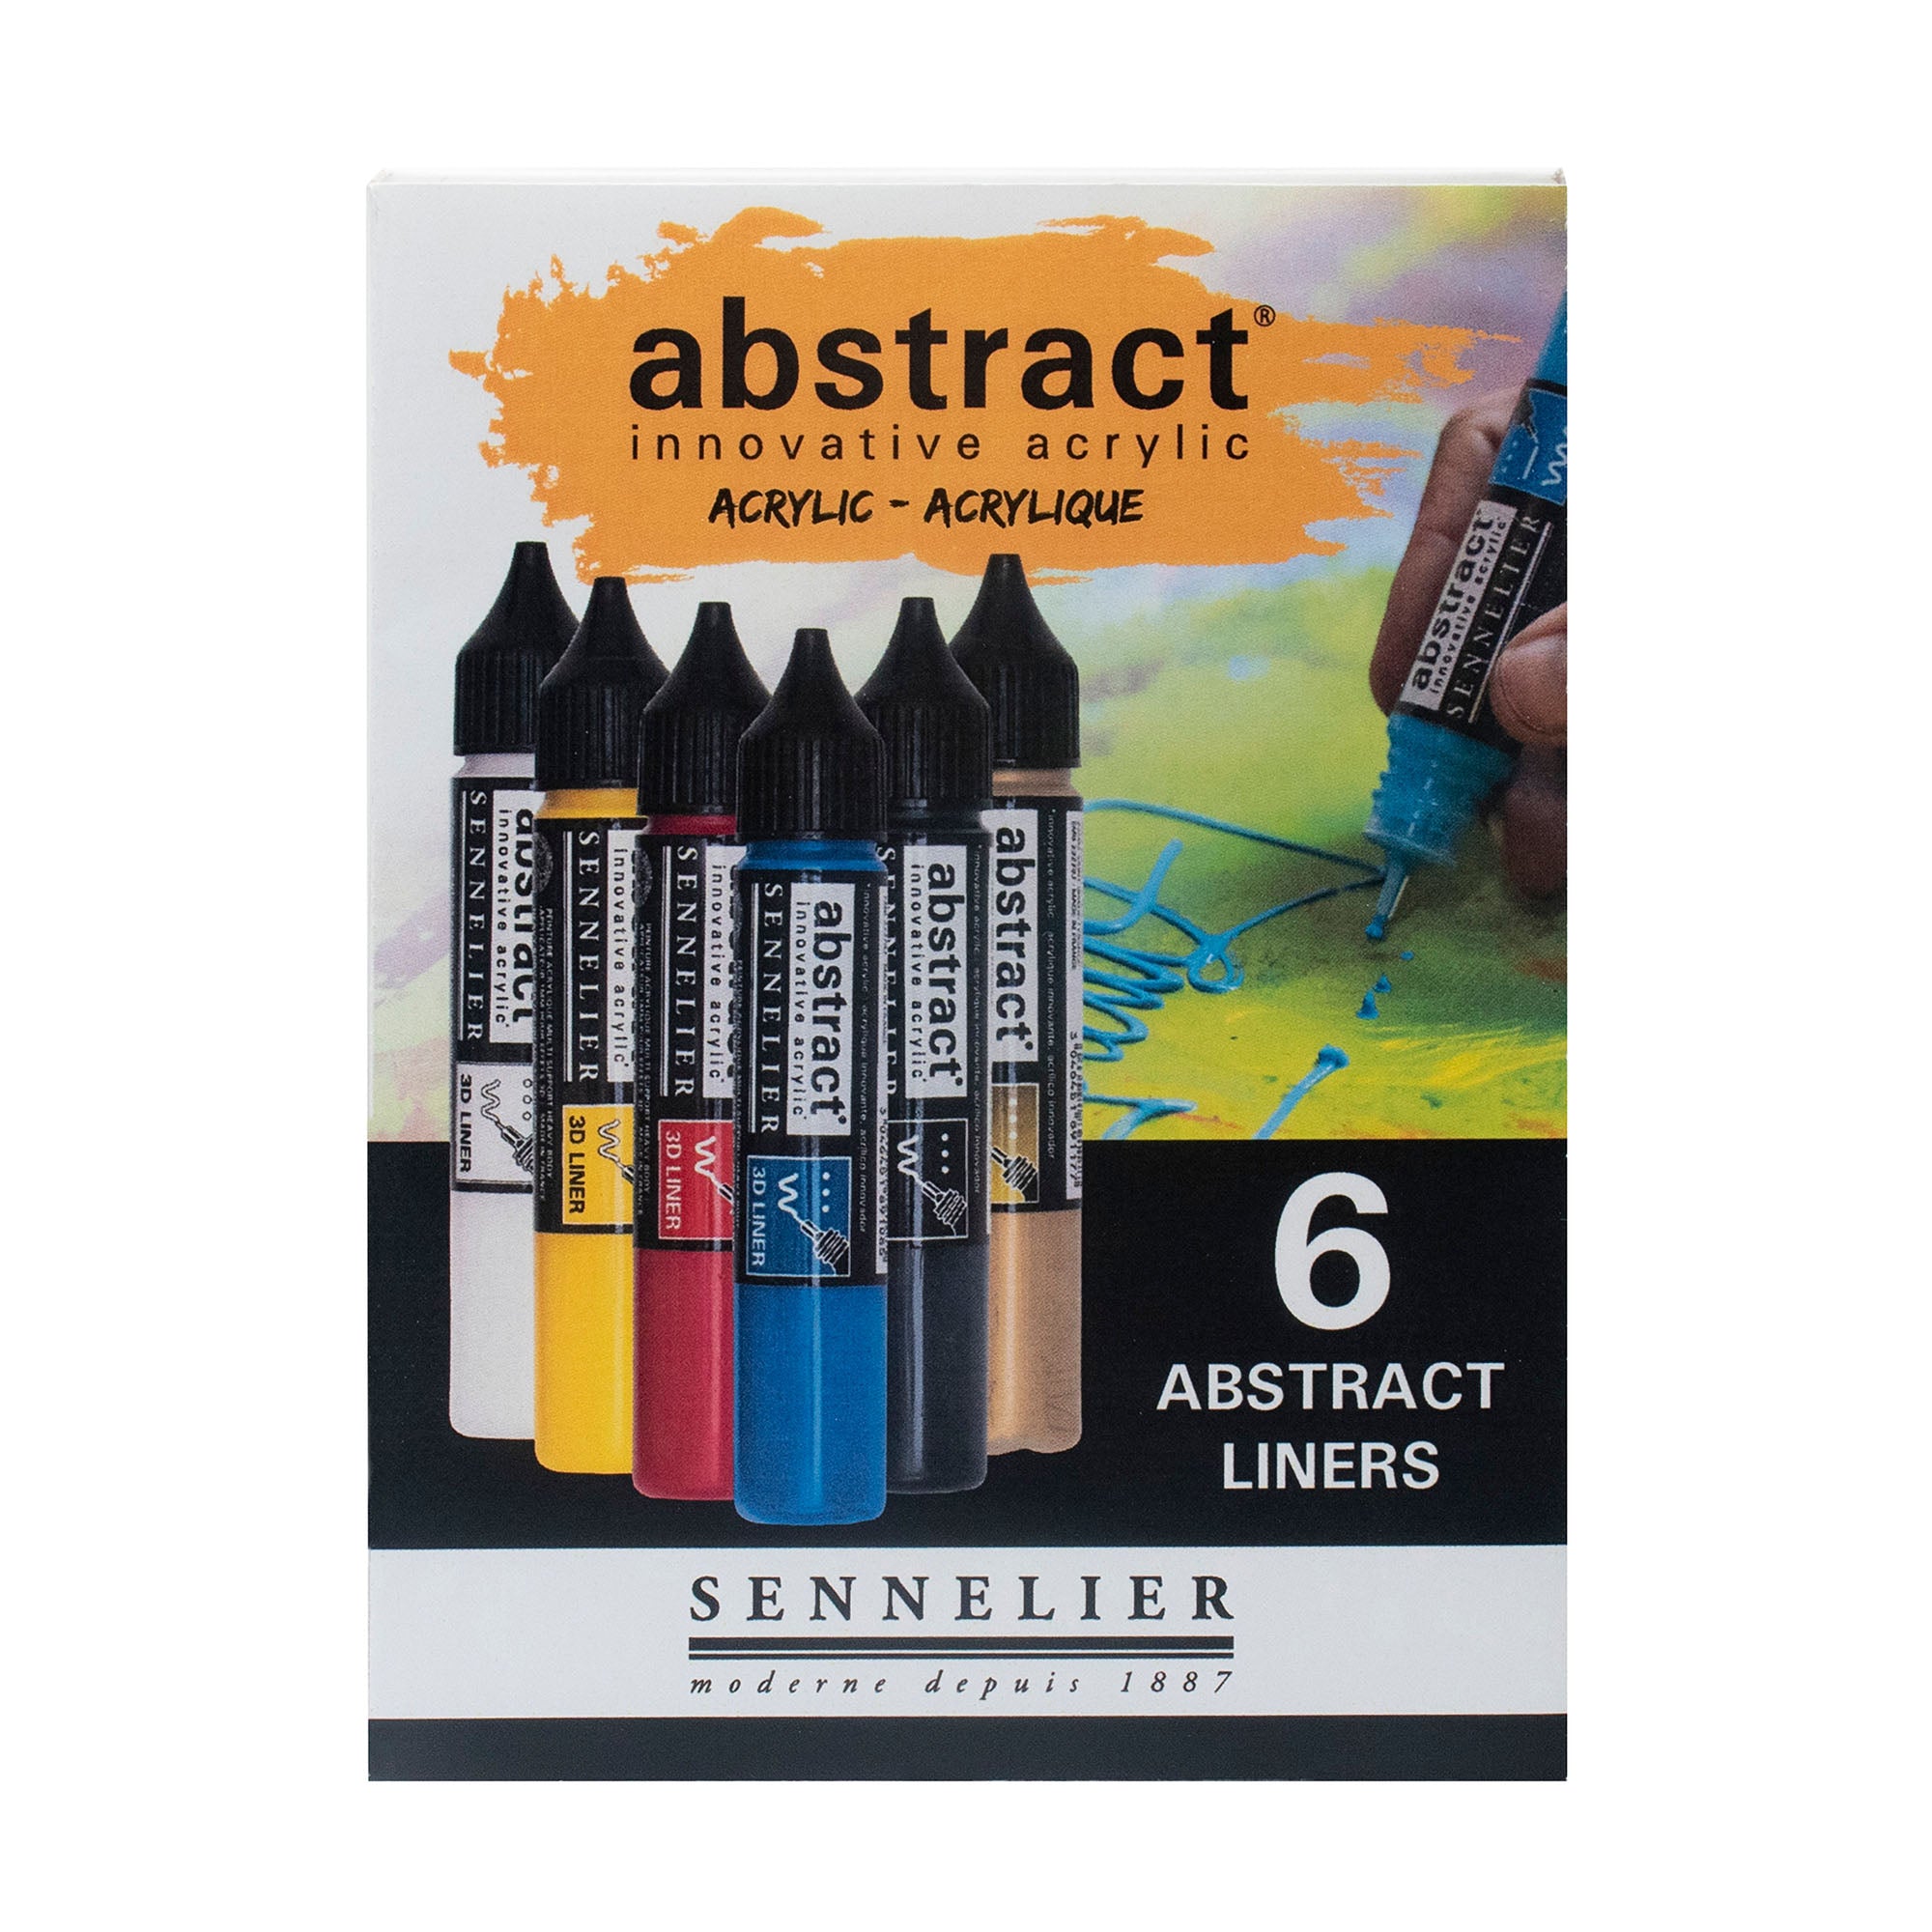 Kit de marqueurs de peinture acrylique, 56 couleurs, comprend 20